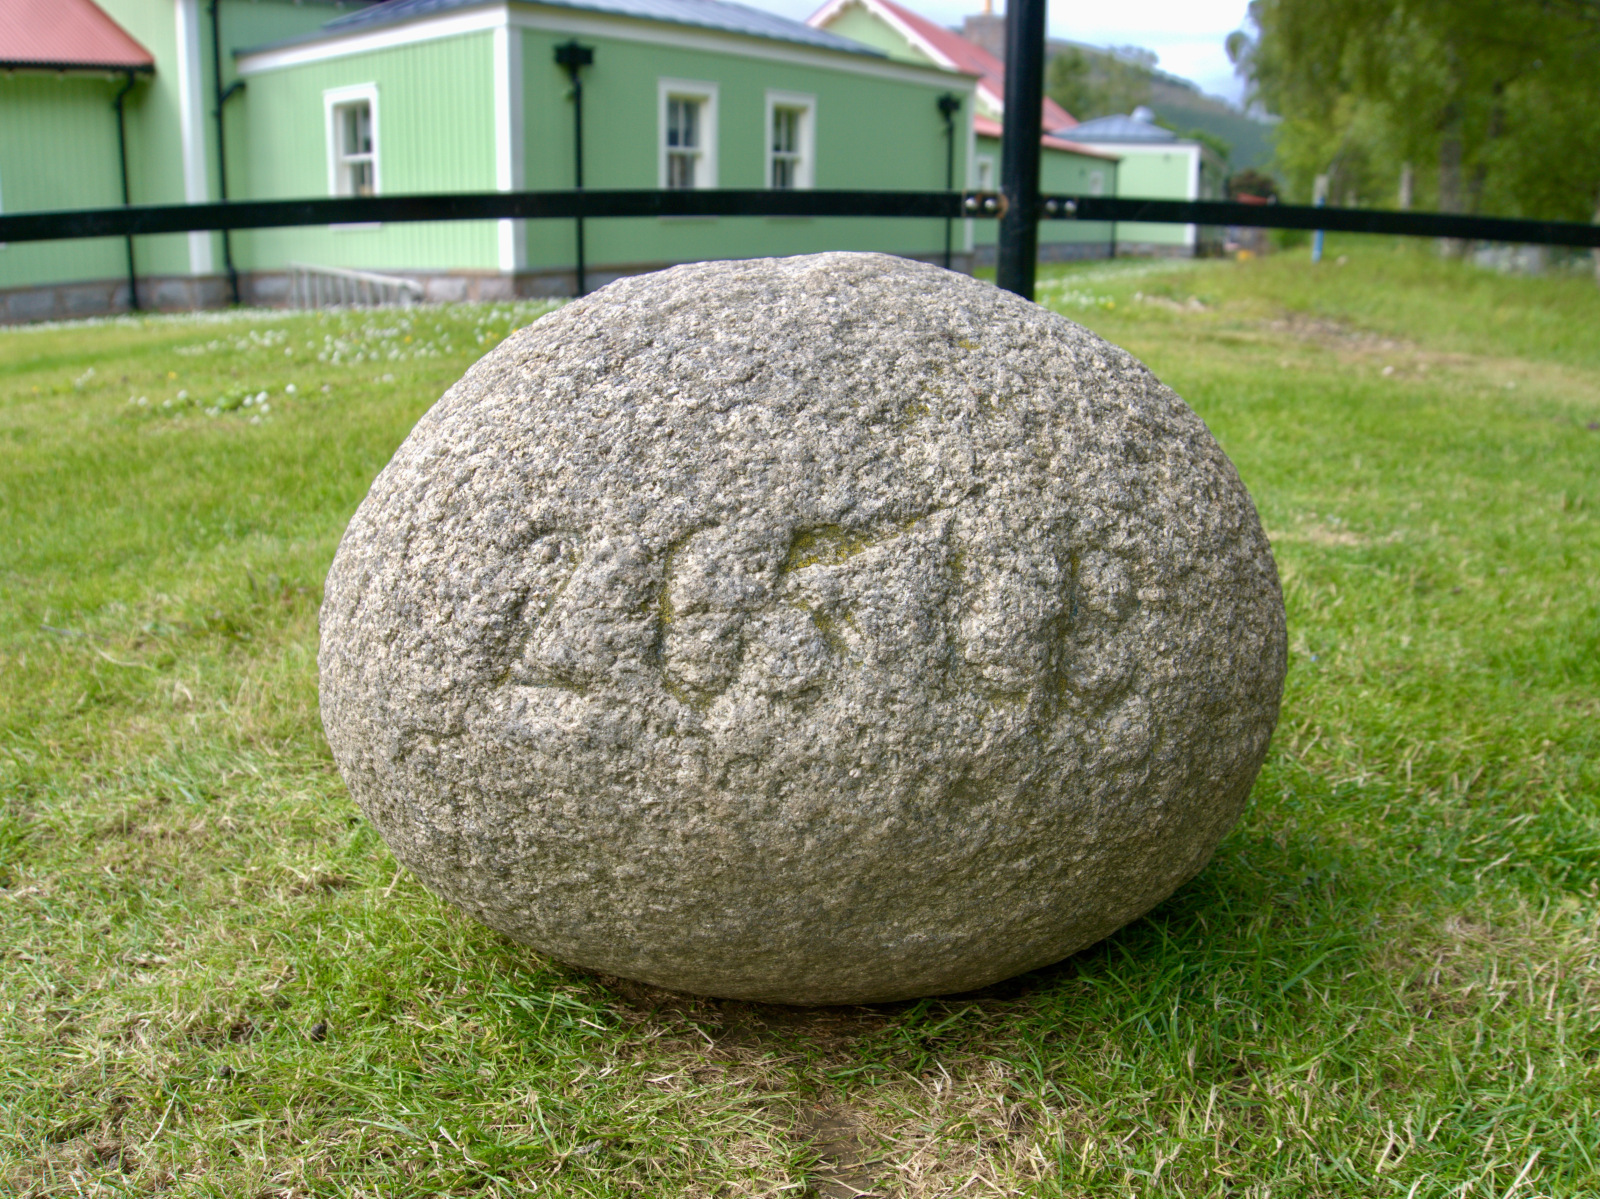 The Inver stone